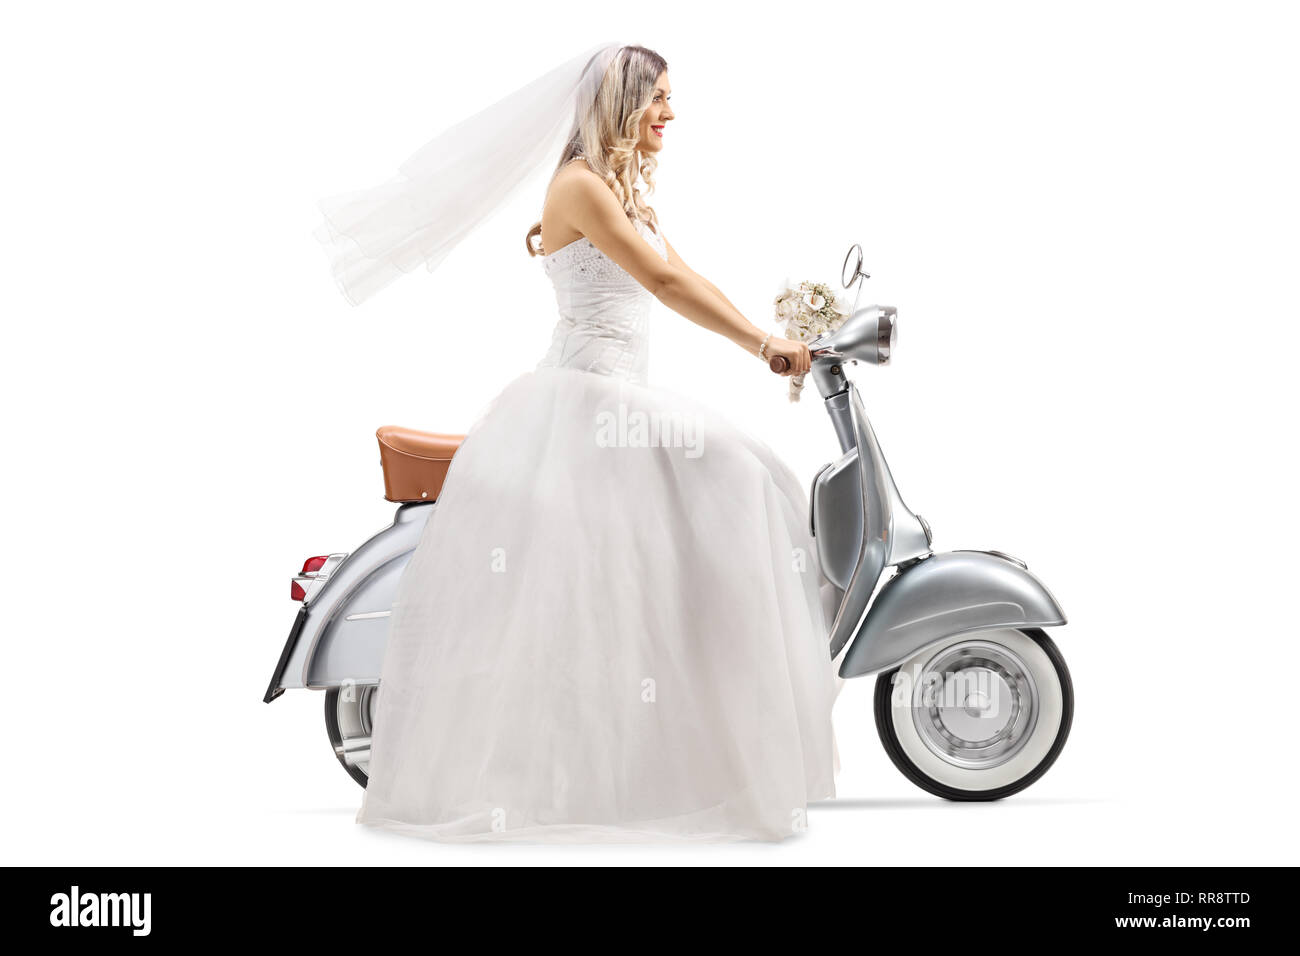 Profil de toute la longueur de la bride d'un cheval vintage scooter isolé sur fond blanc Banque D'Images